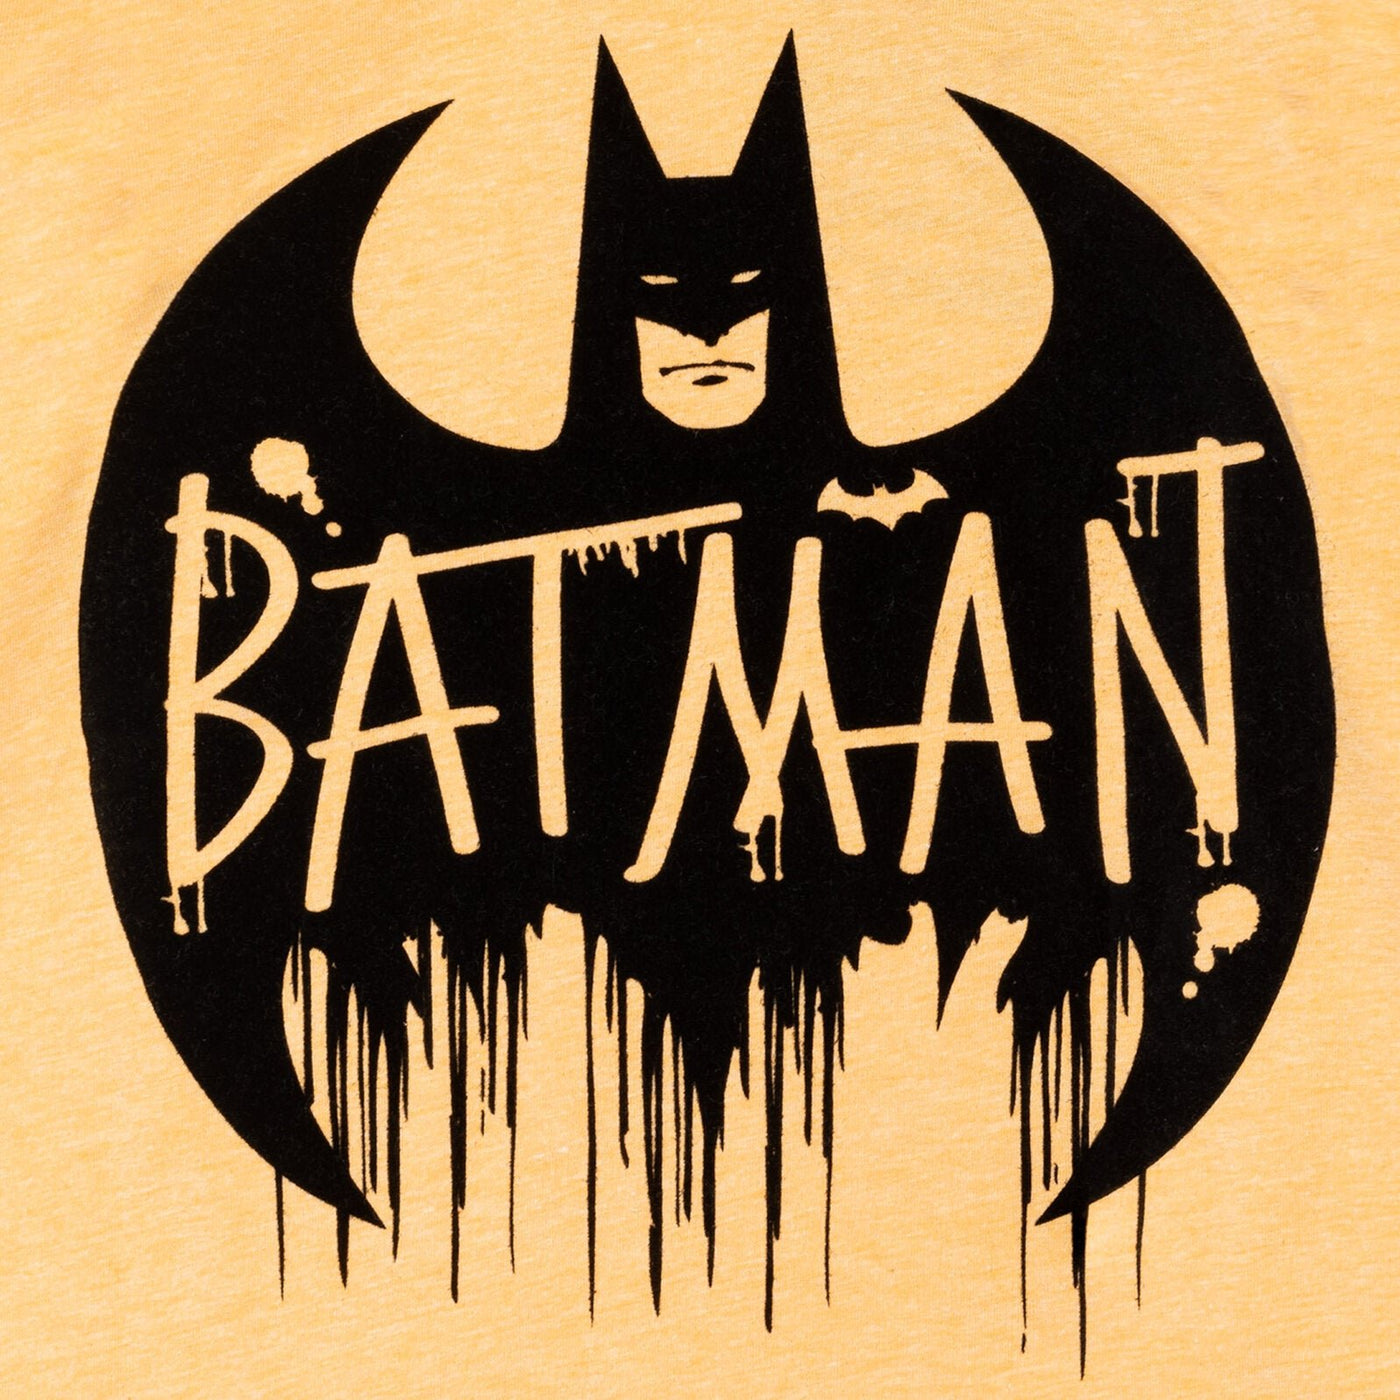 DC Comics Batman Hoodie and Pants Set - imagikids